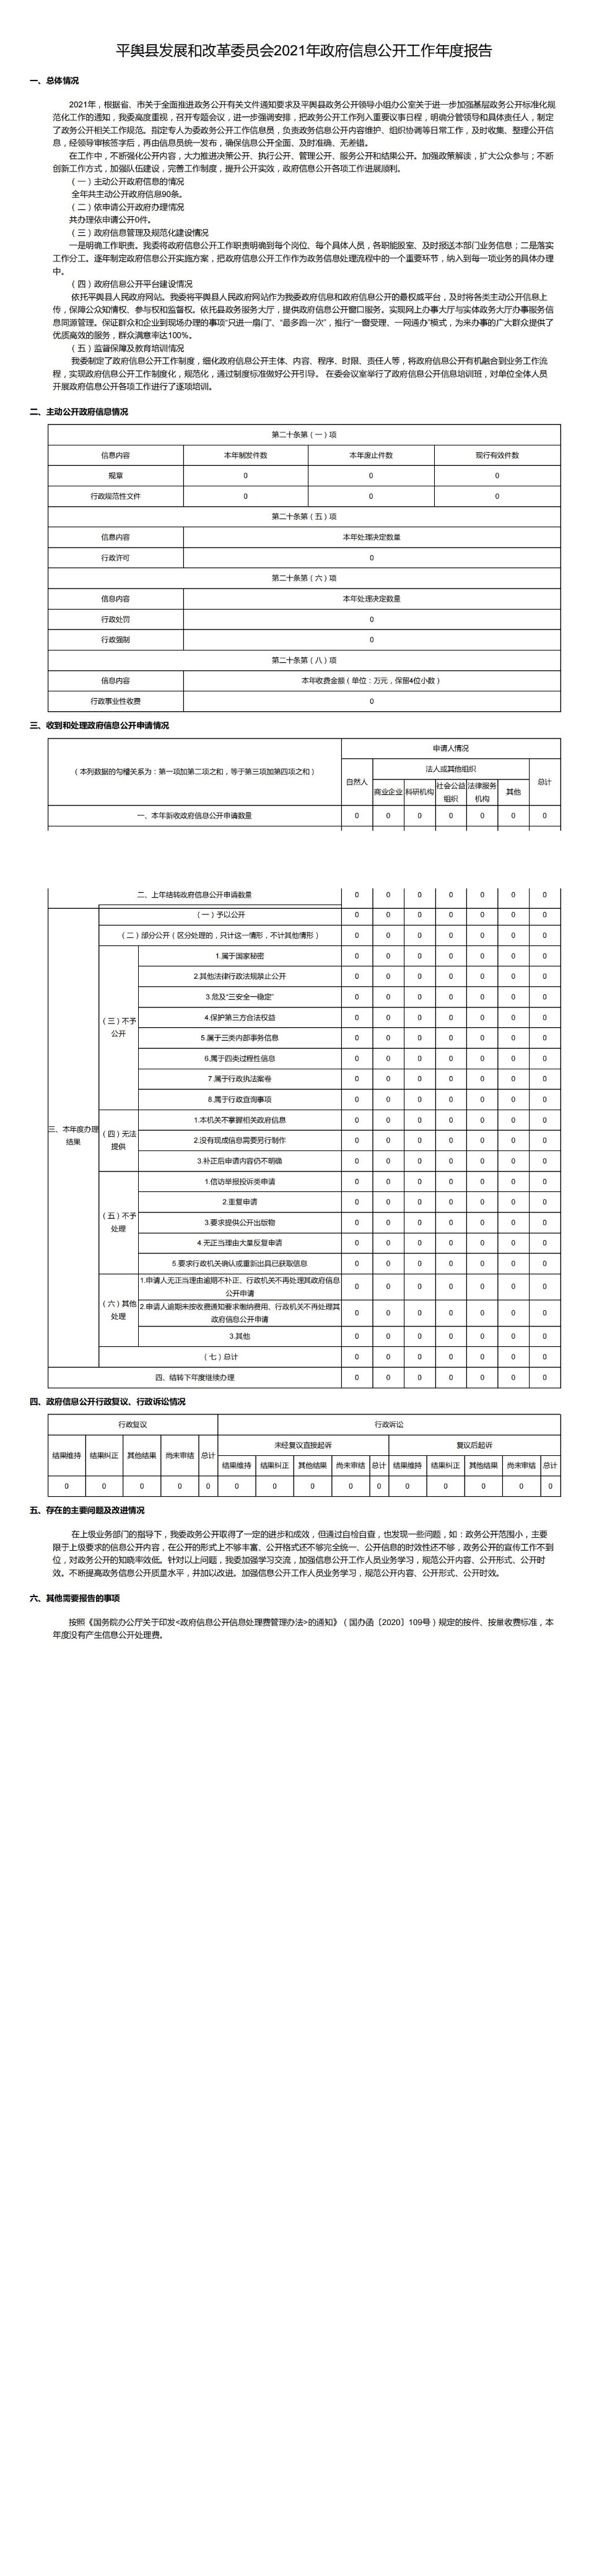 平舆县发展和改革委员会2021年政府信息公开工作年度报告_00.jpg